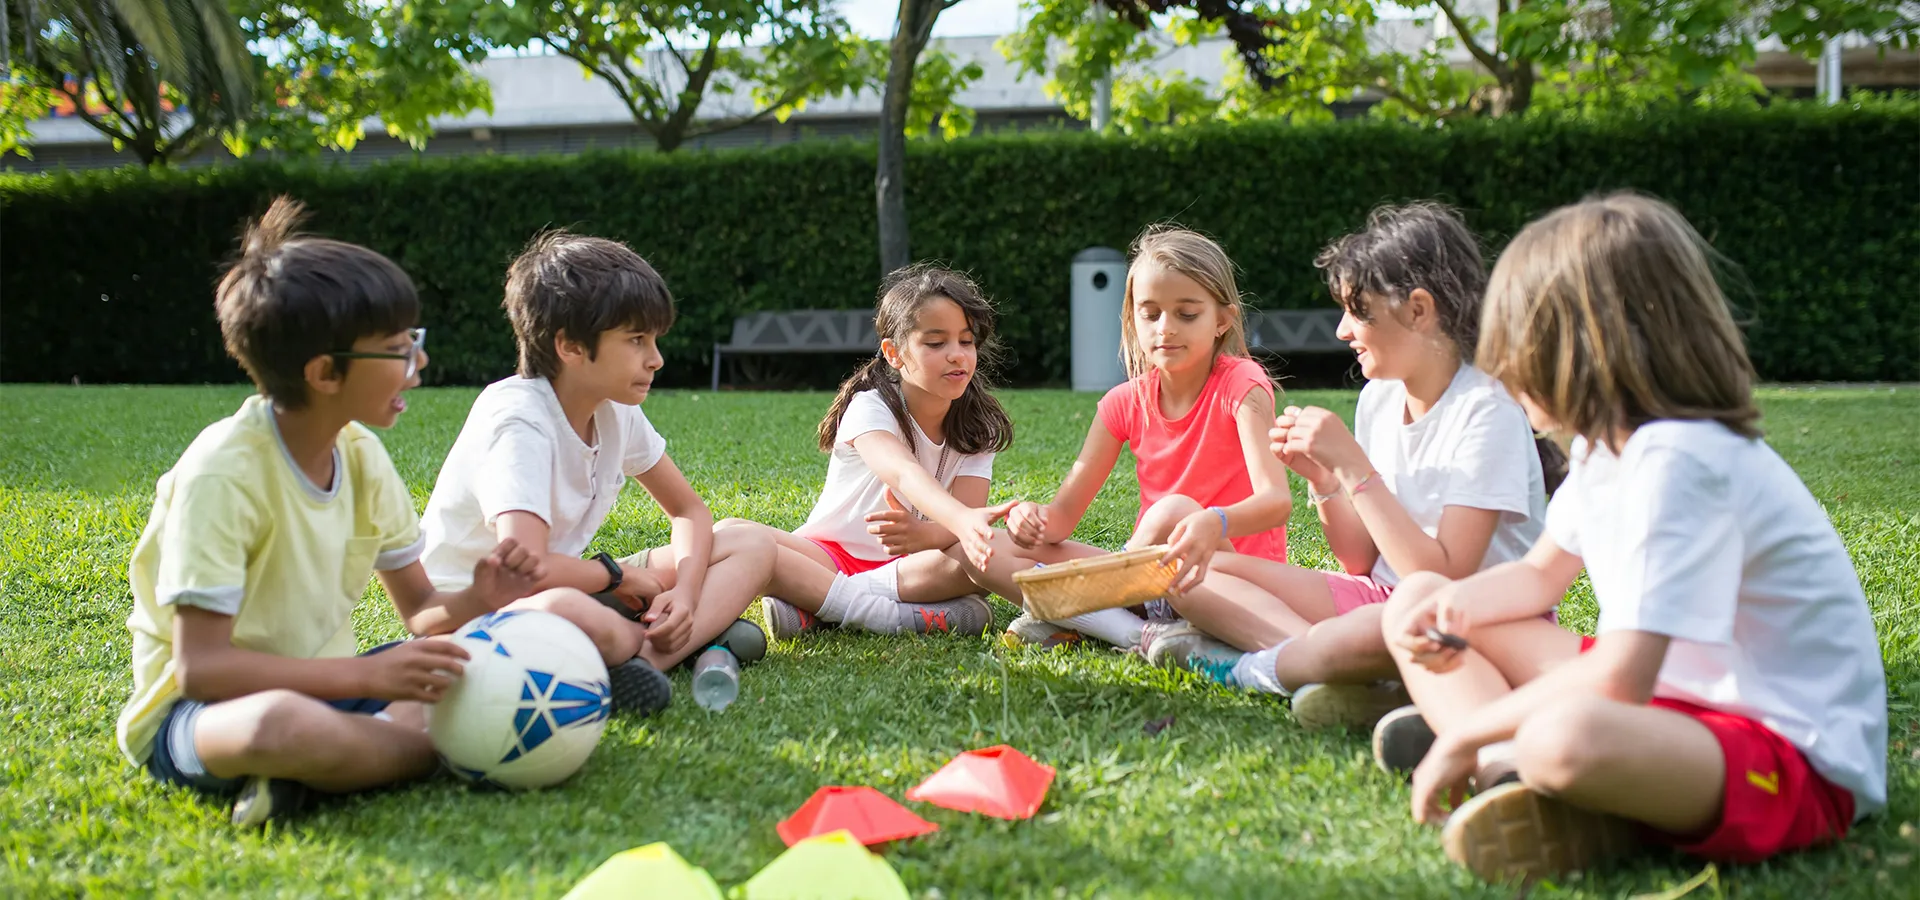 Kinder spielen zusammen im Gras mit einem Fußball und Konen.